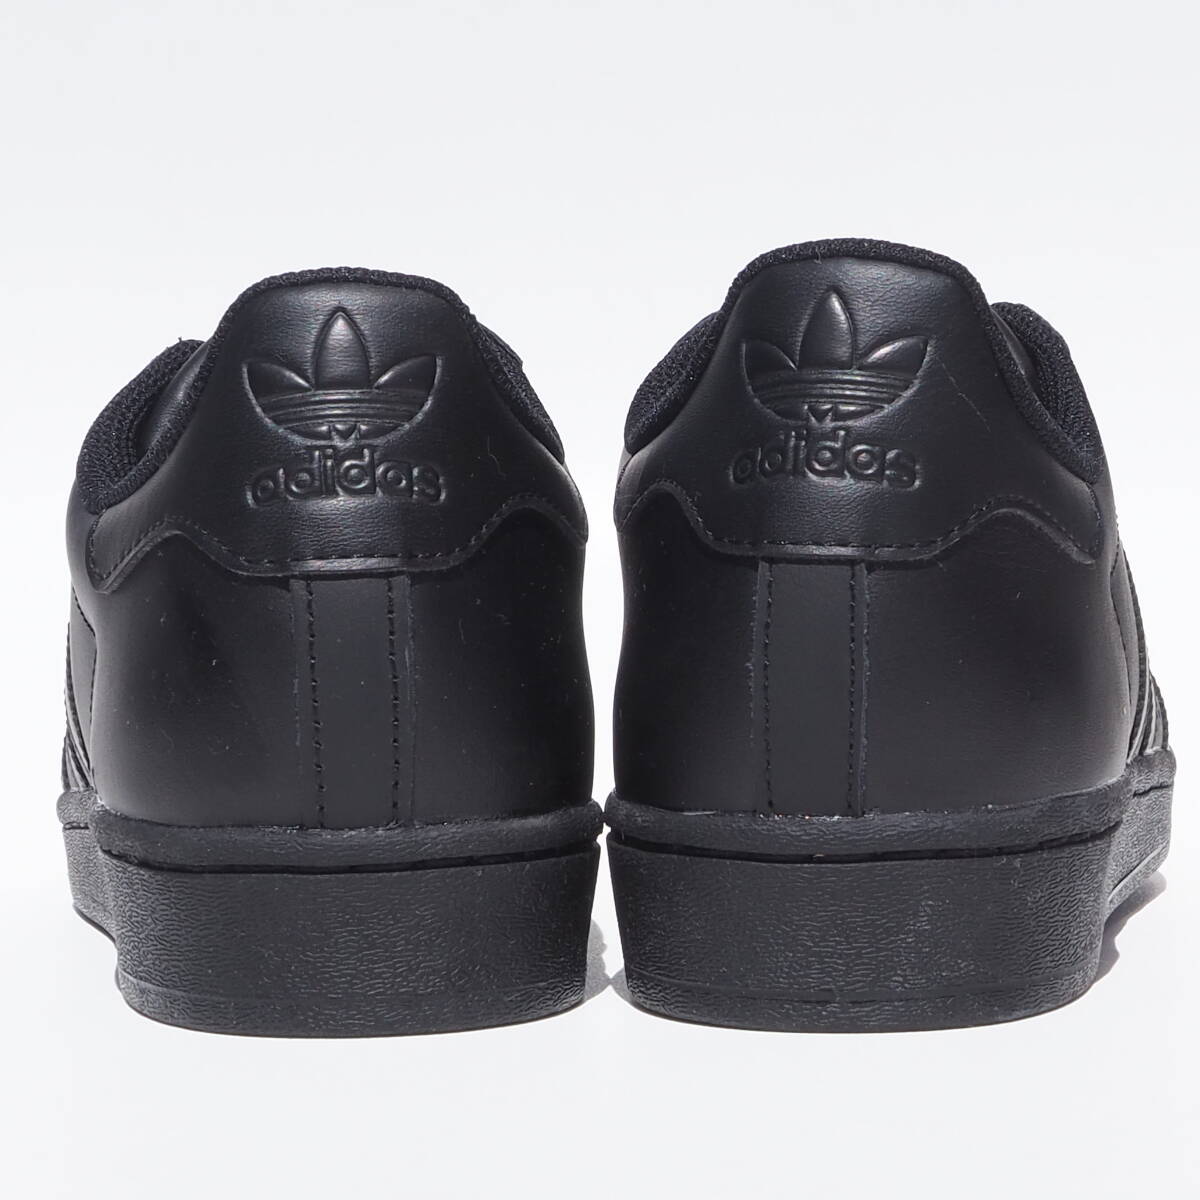 デッド!! 新品 US 9 / 27cm 限定カラー 23年 adidas スーパースター 黒黒 トリプルブラック 天然皮革 レザーの画像4